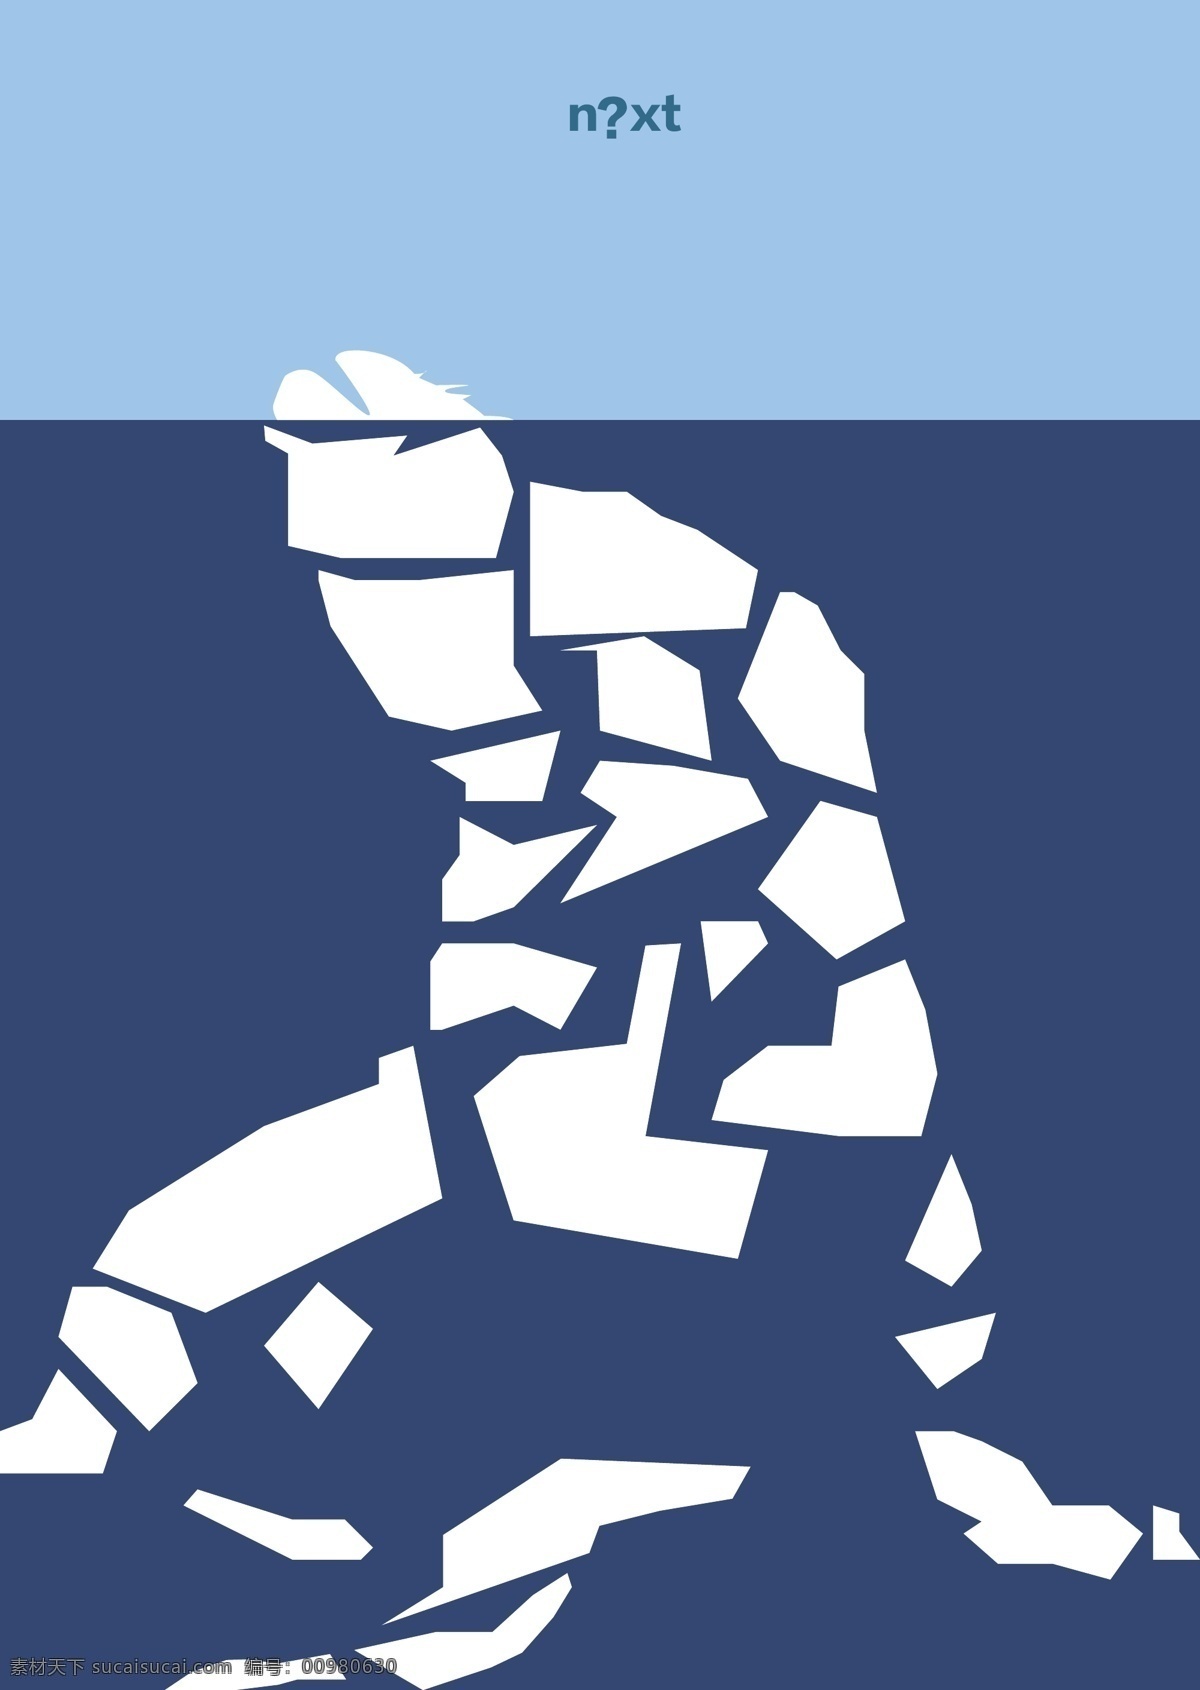 保护动物 保护环境 公益 公益海报 海洋 环保 蓝色 破裂 其他矢量 海狮 海平面上升 冰面 防止污染 海洋环境 矢量素材 矢量 环保公益海报